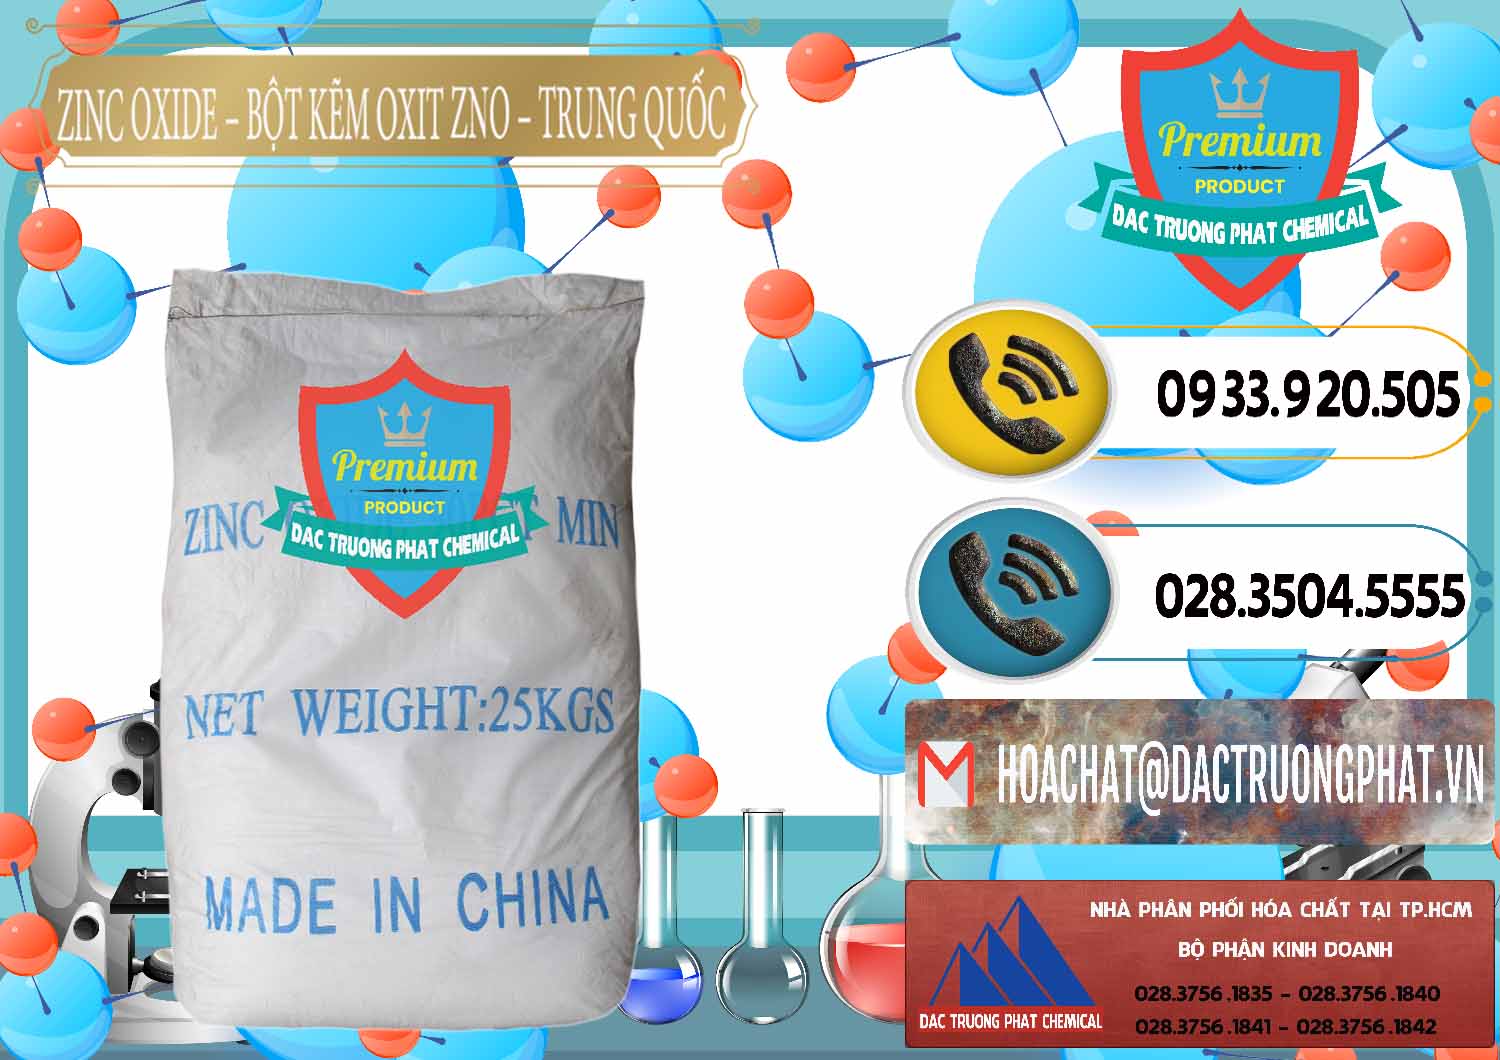 Cty kinh doanh ( bán ) Zinc Oxide - Bột Kẽm Oxit ZNO Trung Quốc China - 0182 - Chuyên cung cấp - nhập khẩu hóa chất tại TP.HCM - hoachatdetnhuom.vn